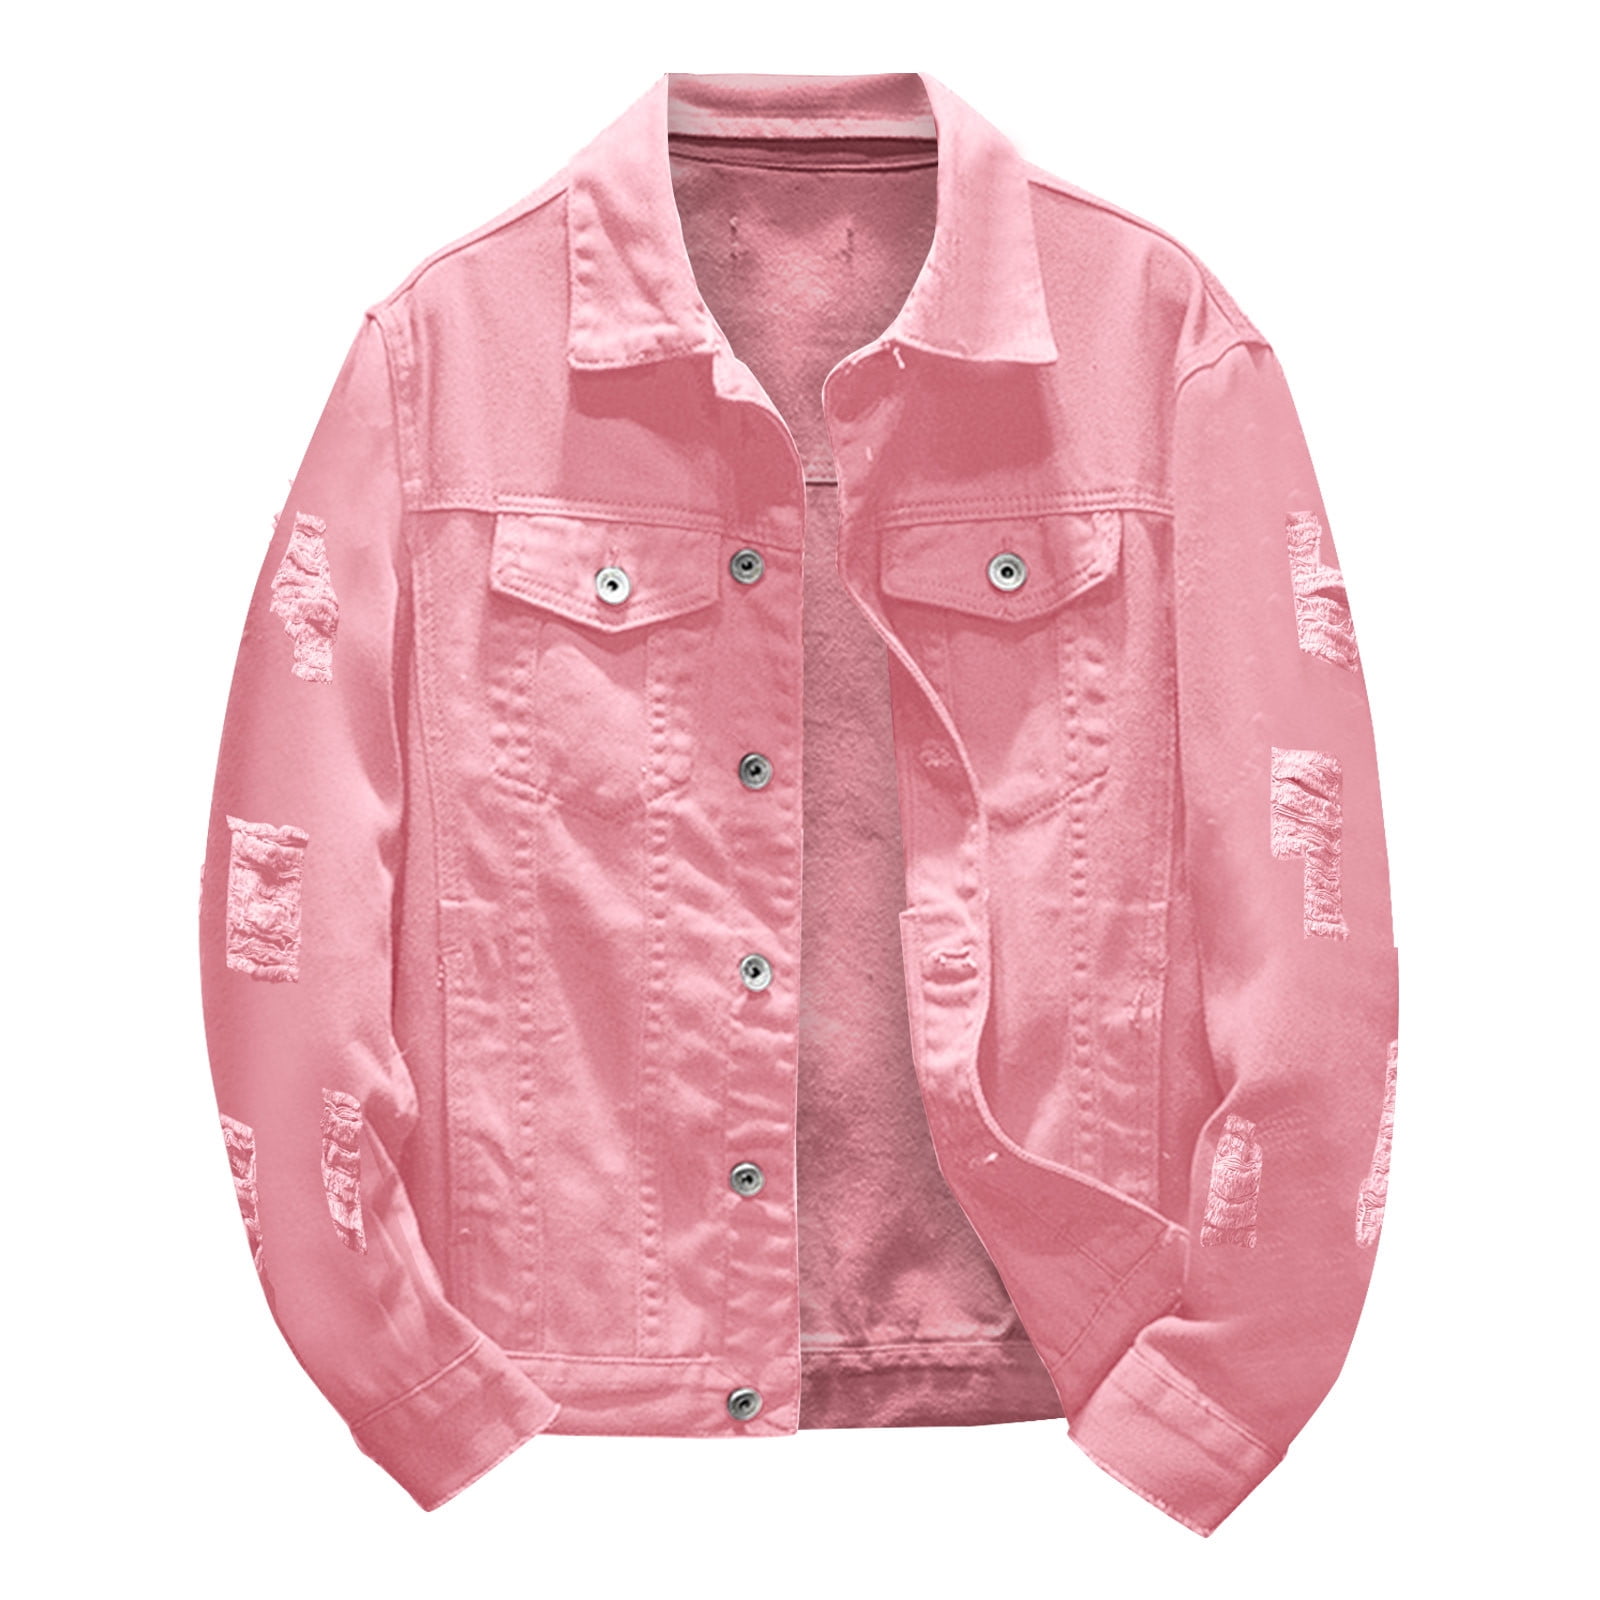 Denim Jacket Mens Spring And Autumn Fashion Leisure Solid Color Buckle  Lapel Denim Jcket Coat Top Blouse